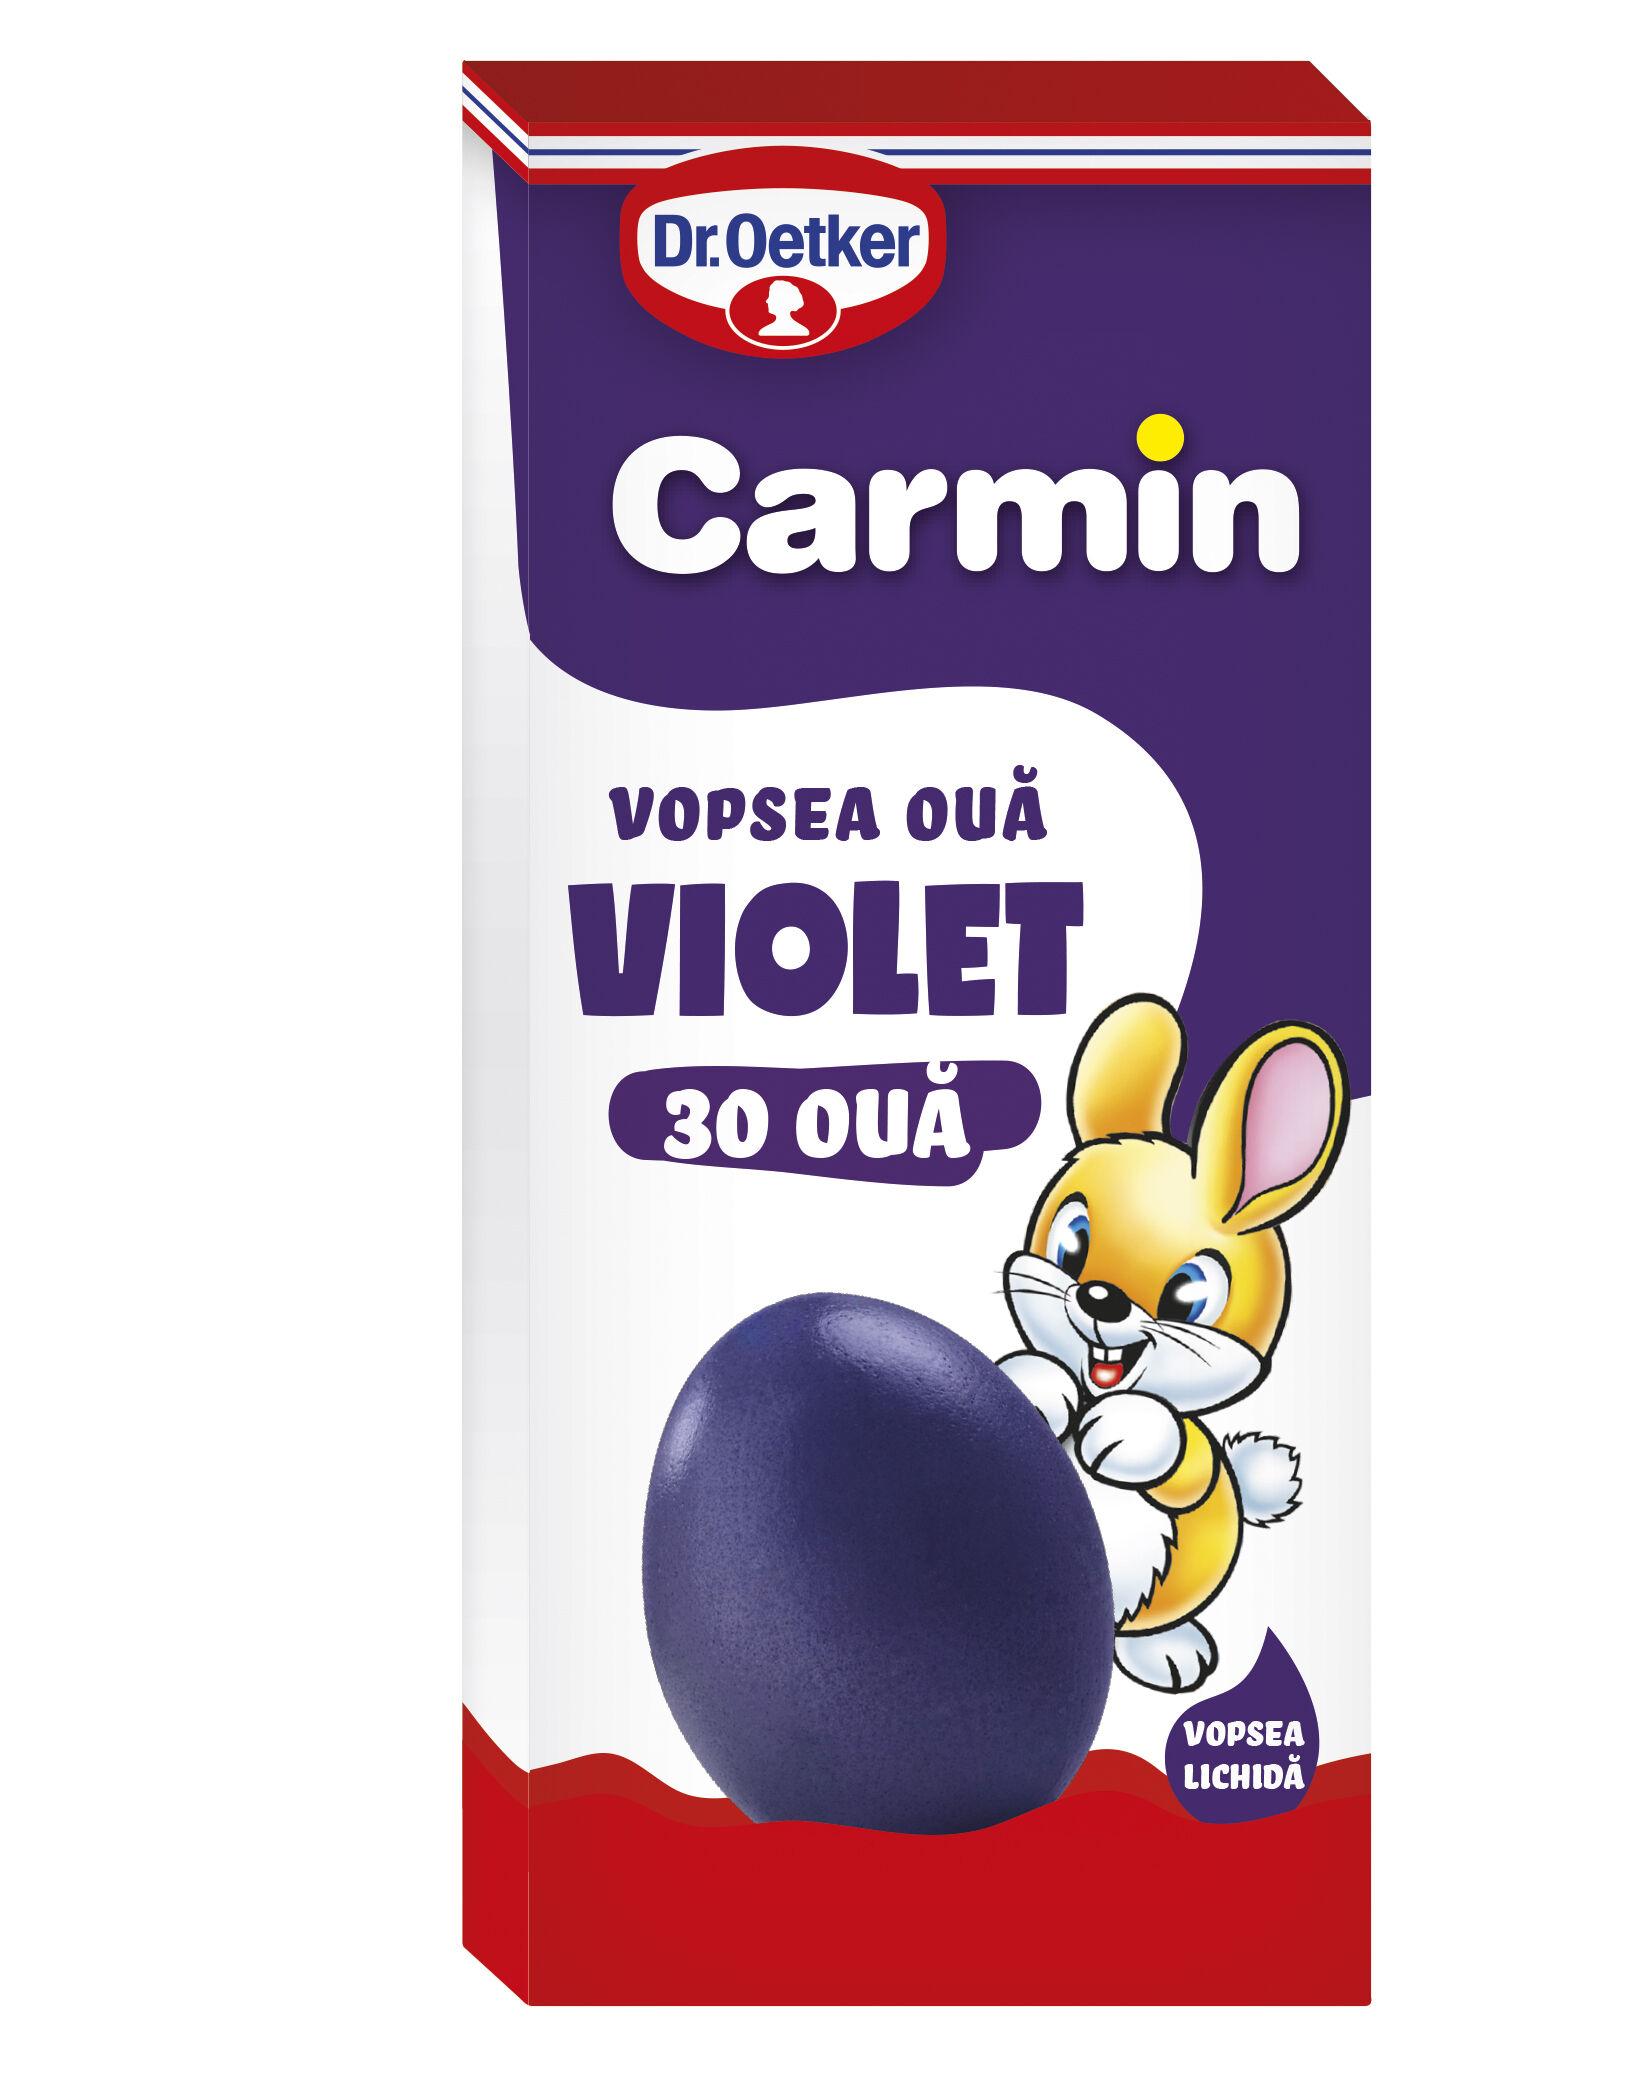 Vopsea lichida violet Carmin pentru 30 oua